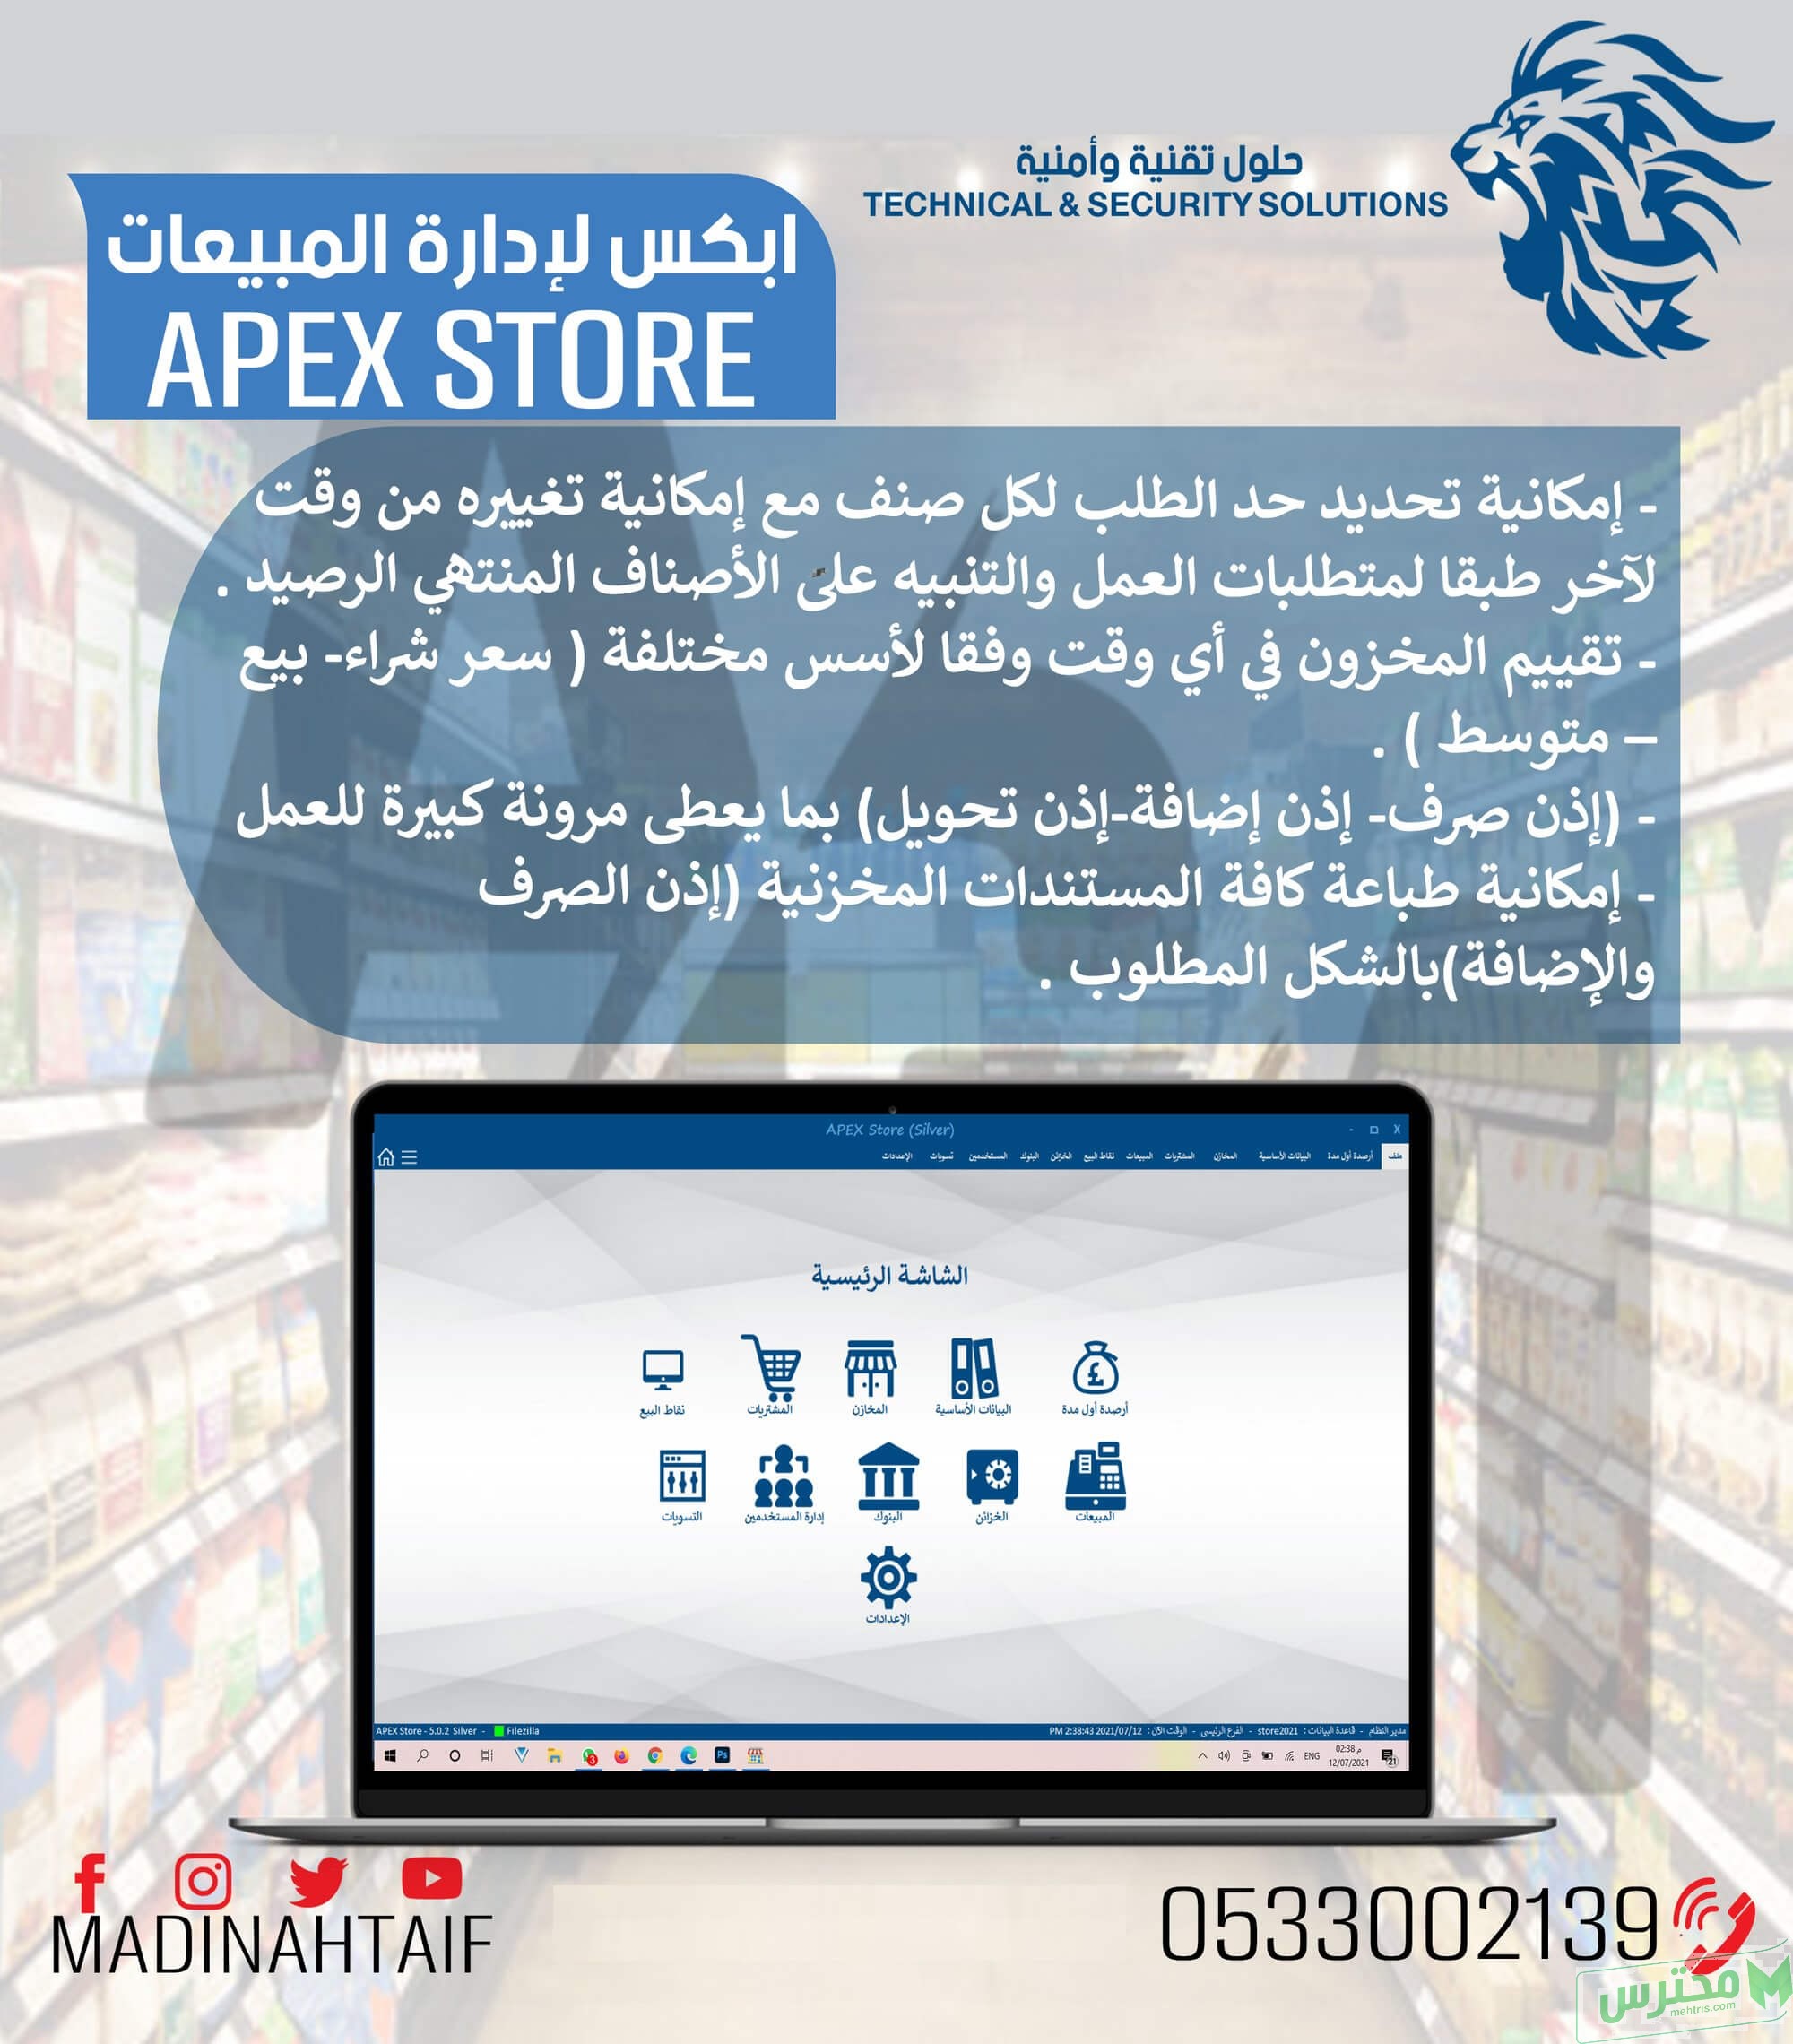 اقوي برنامج مبيعات لادارة المخزون والمشتريات يدعم الفاتورة الالكترونية APEX STORE